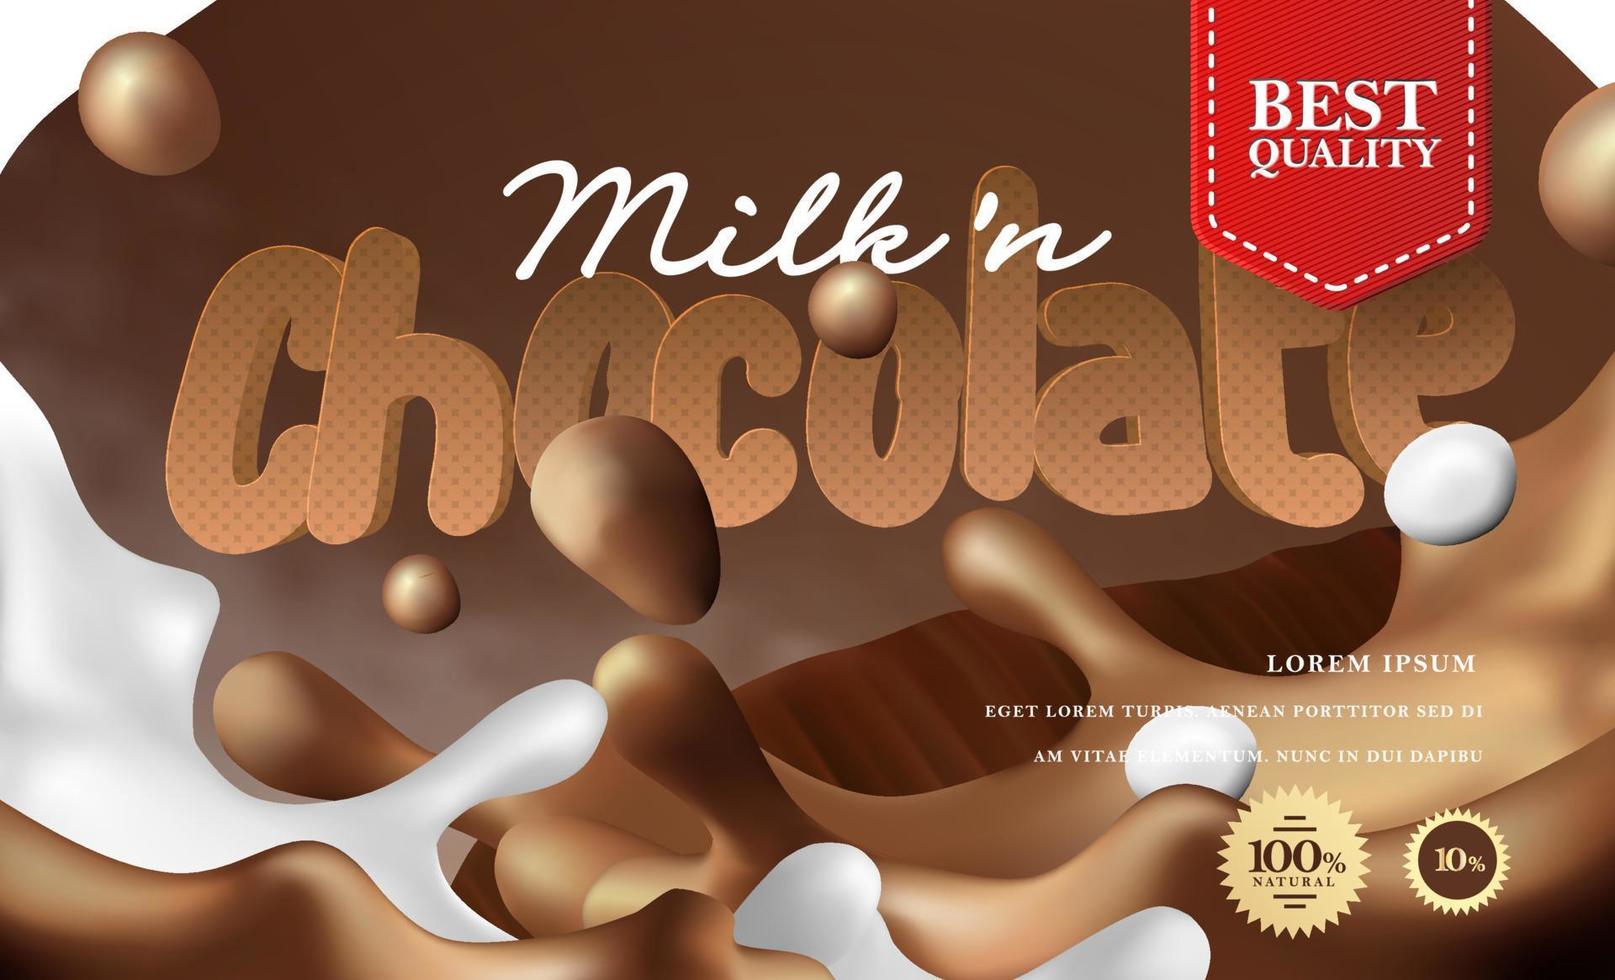 Illustrazione realistica della scena della spruzzata del liquido del latte alla vaniglia e del cioccolato 3d. vettore di pubblicità di prodotti di cioccolato